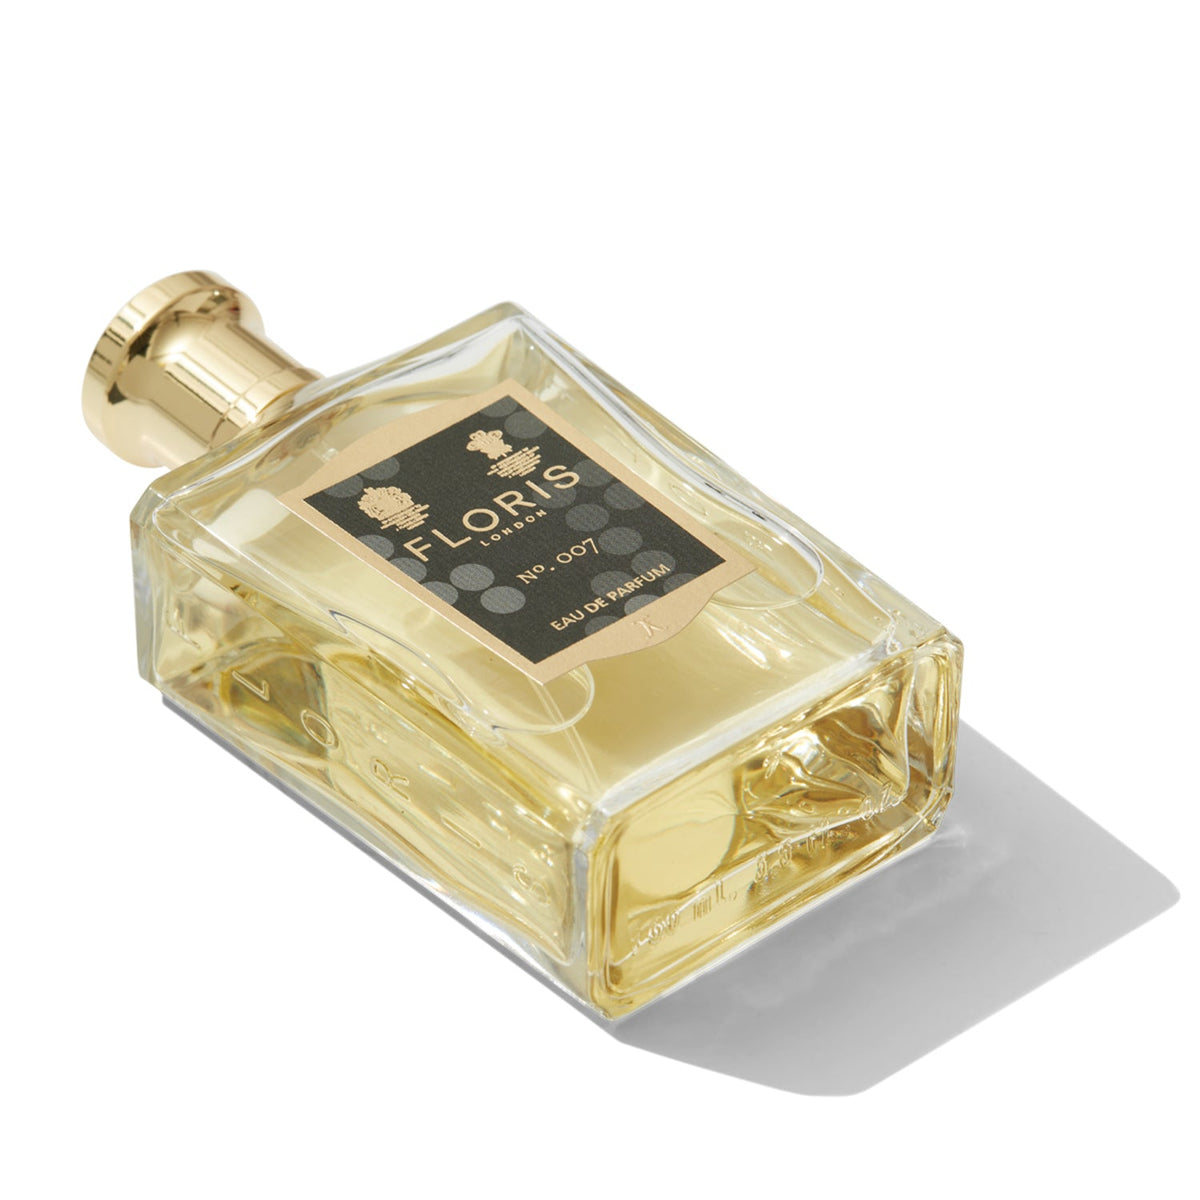 No.007 Eau De Parfum - By Floris London (100ml)